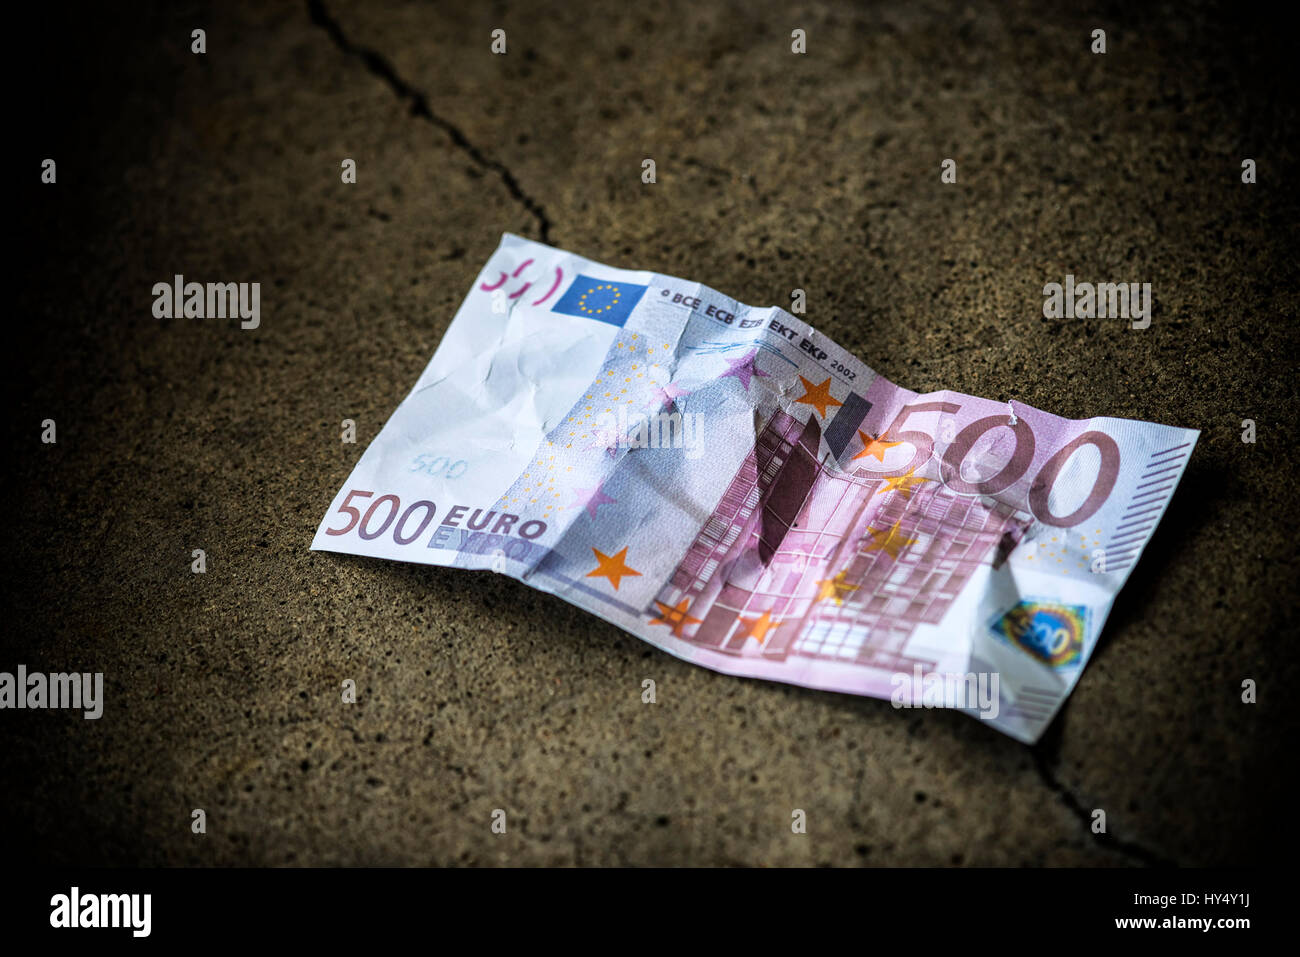 500-euro-luce sulla terra, prevista abolizione del 500-euro-bank nota, 500-Euro-Schein auf dem Boden, geplante Abschaffung der 500-Euro-Banknote Foto Stock